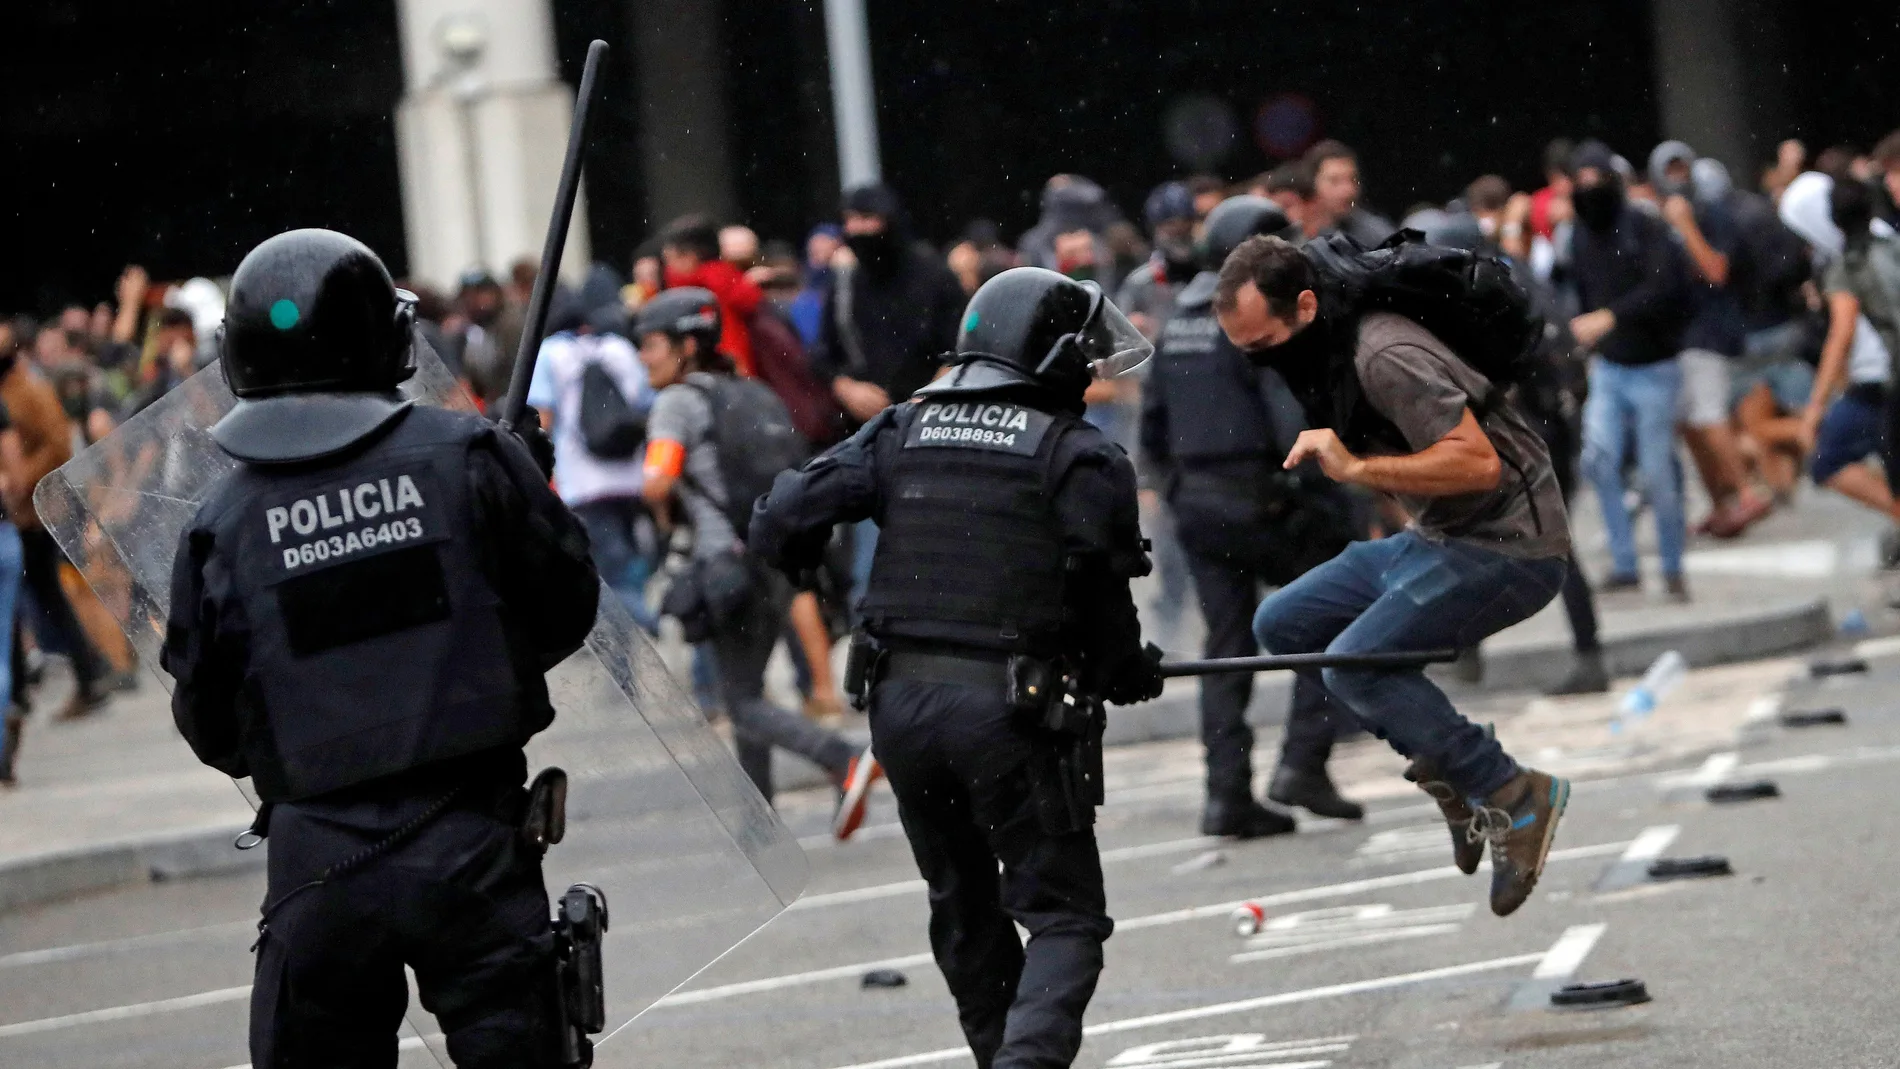 Miembros de los Mossos d'Esquadra cargan contra los centenares de personas que se agolpan ante el Aeropuerto del Prat